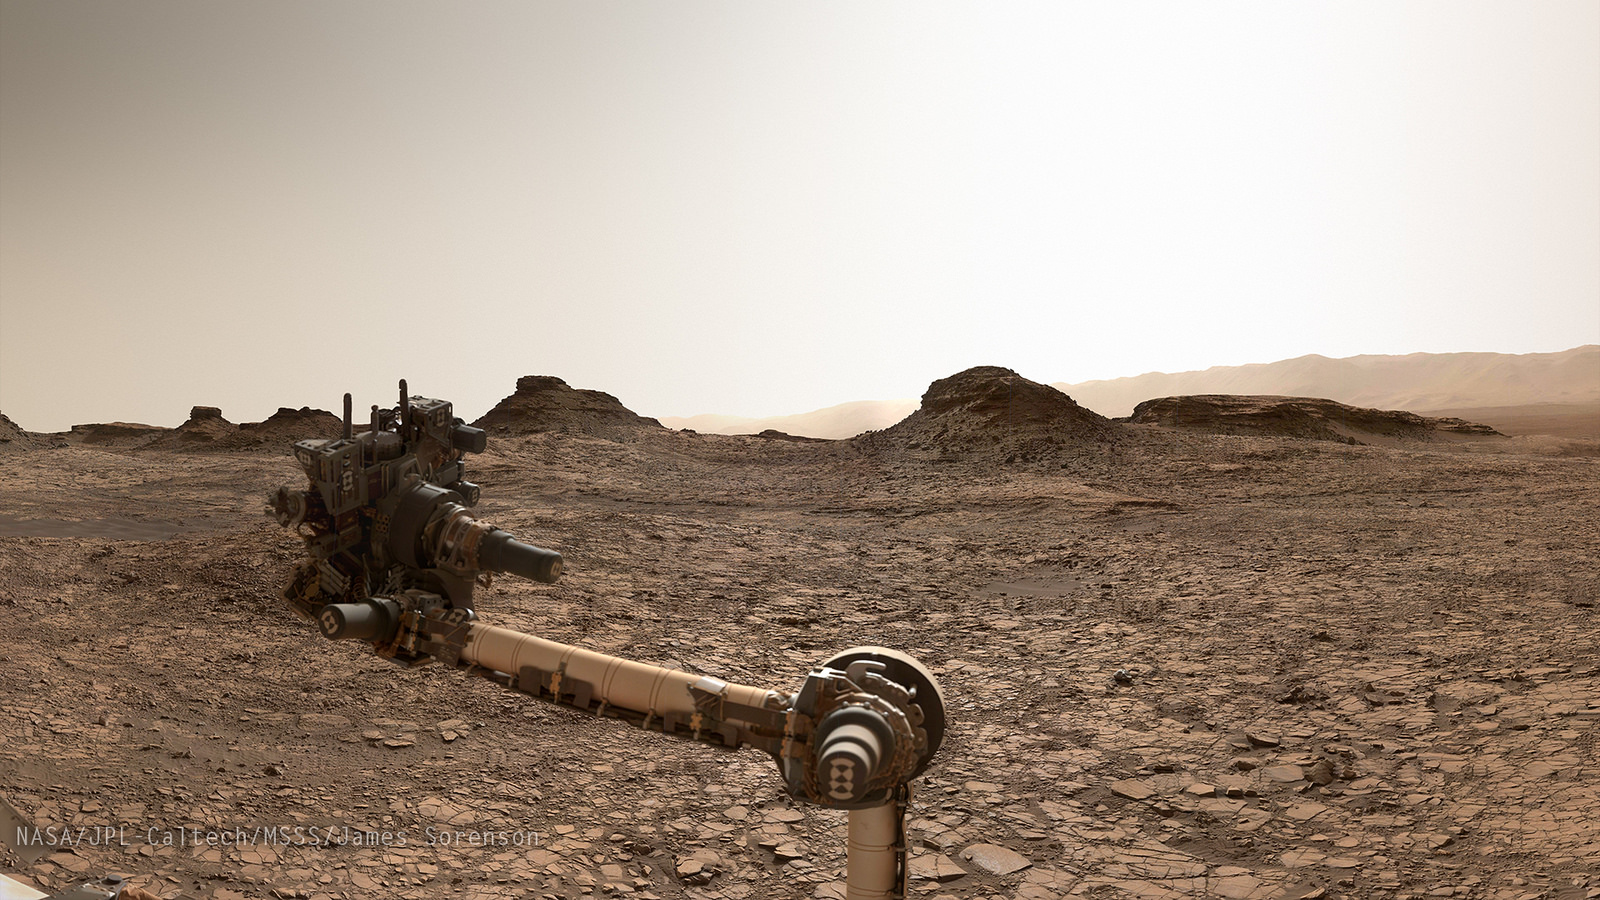 Curiosity near Murray Buttes, on first approach. Image Credit: NASA/JPL-Caltech/MSSS/James Sorenson